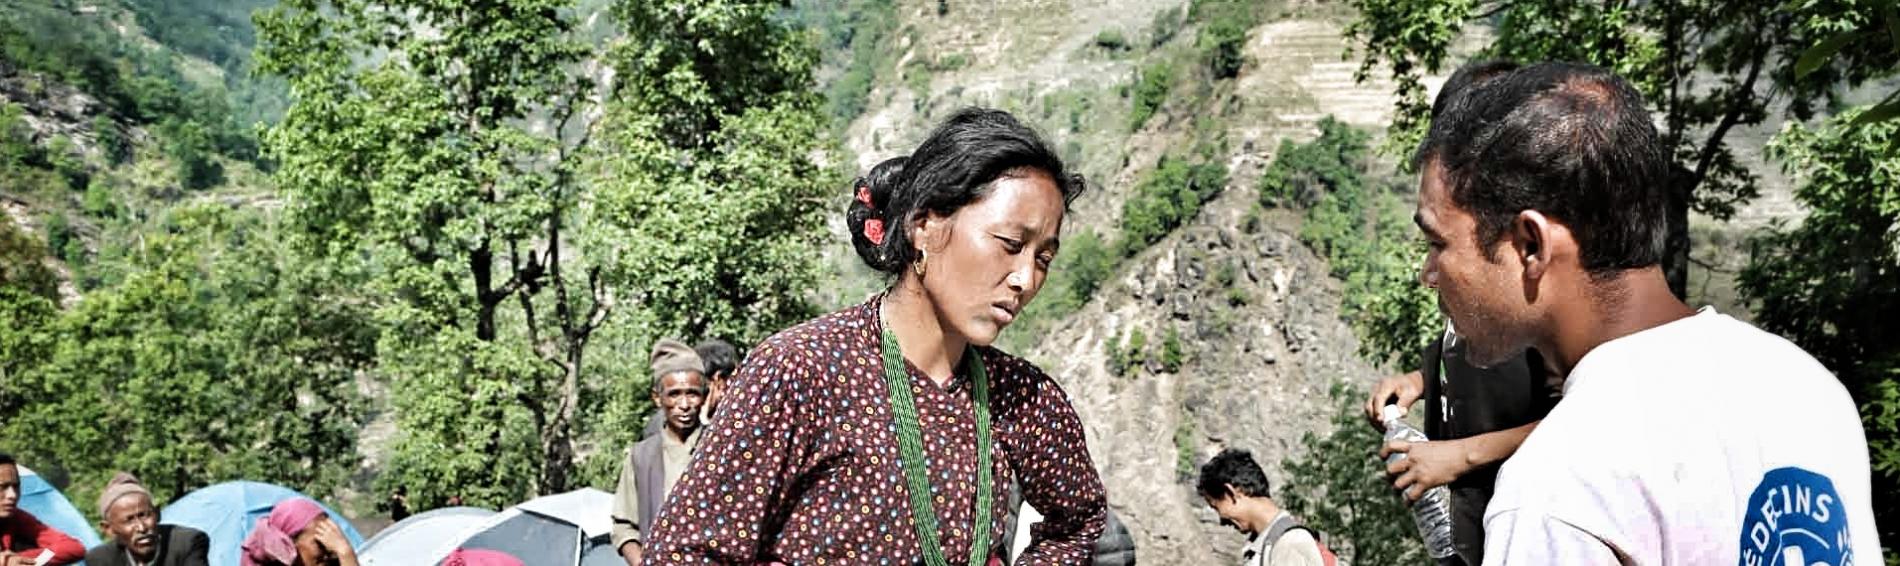 Dans un décor montagneux, un travailleur de Médecins du Monde discute avec une femme dont les mains sont posées sur son ventre. En arrière plan, des tentes et des personnes assises autour.